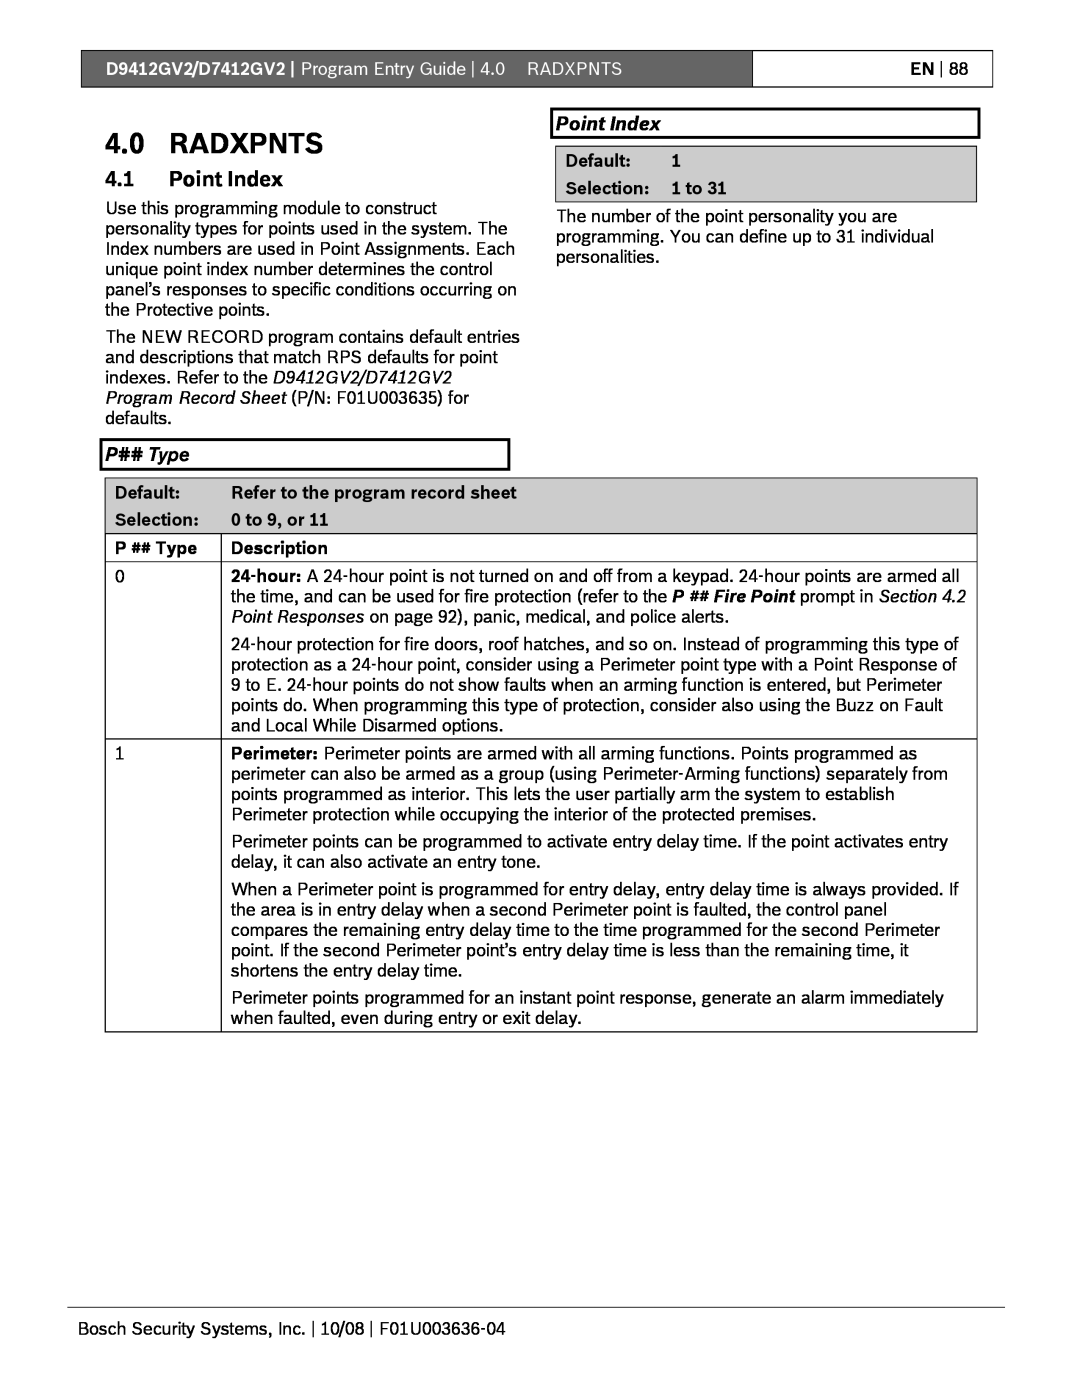 Bosch Appliances D9412GV2 manual 4.0RADXPNTS, 4.1Point Index, P## Type 